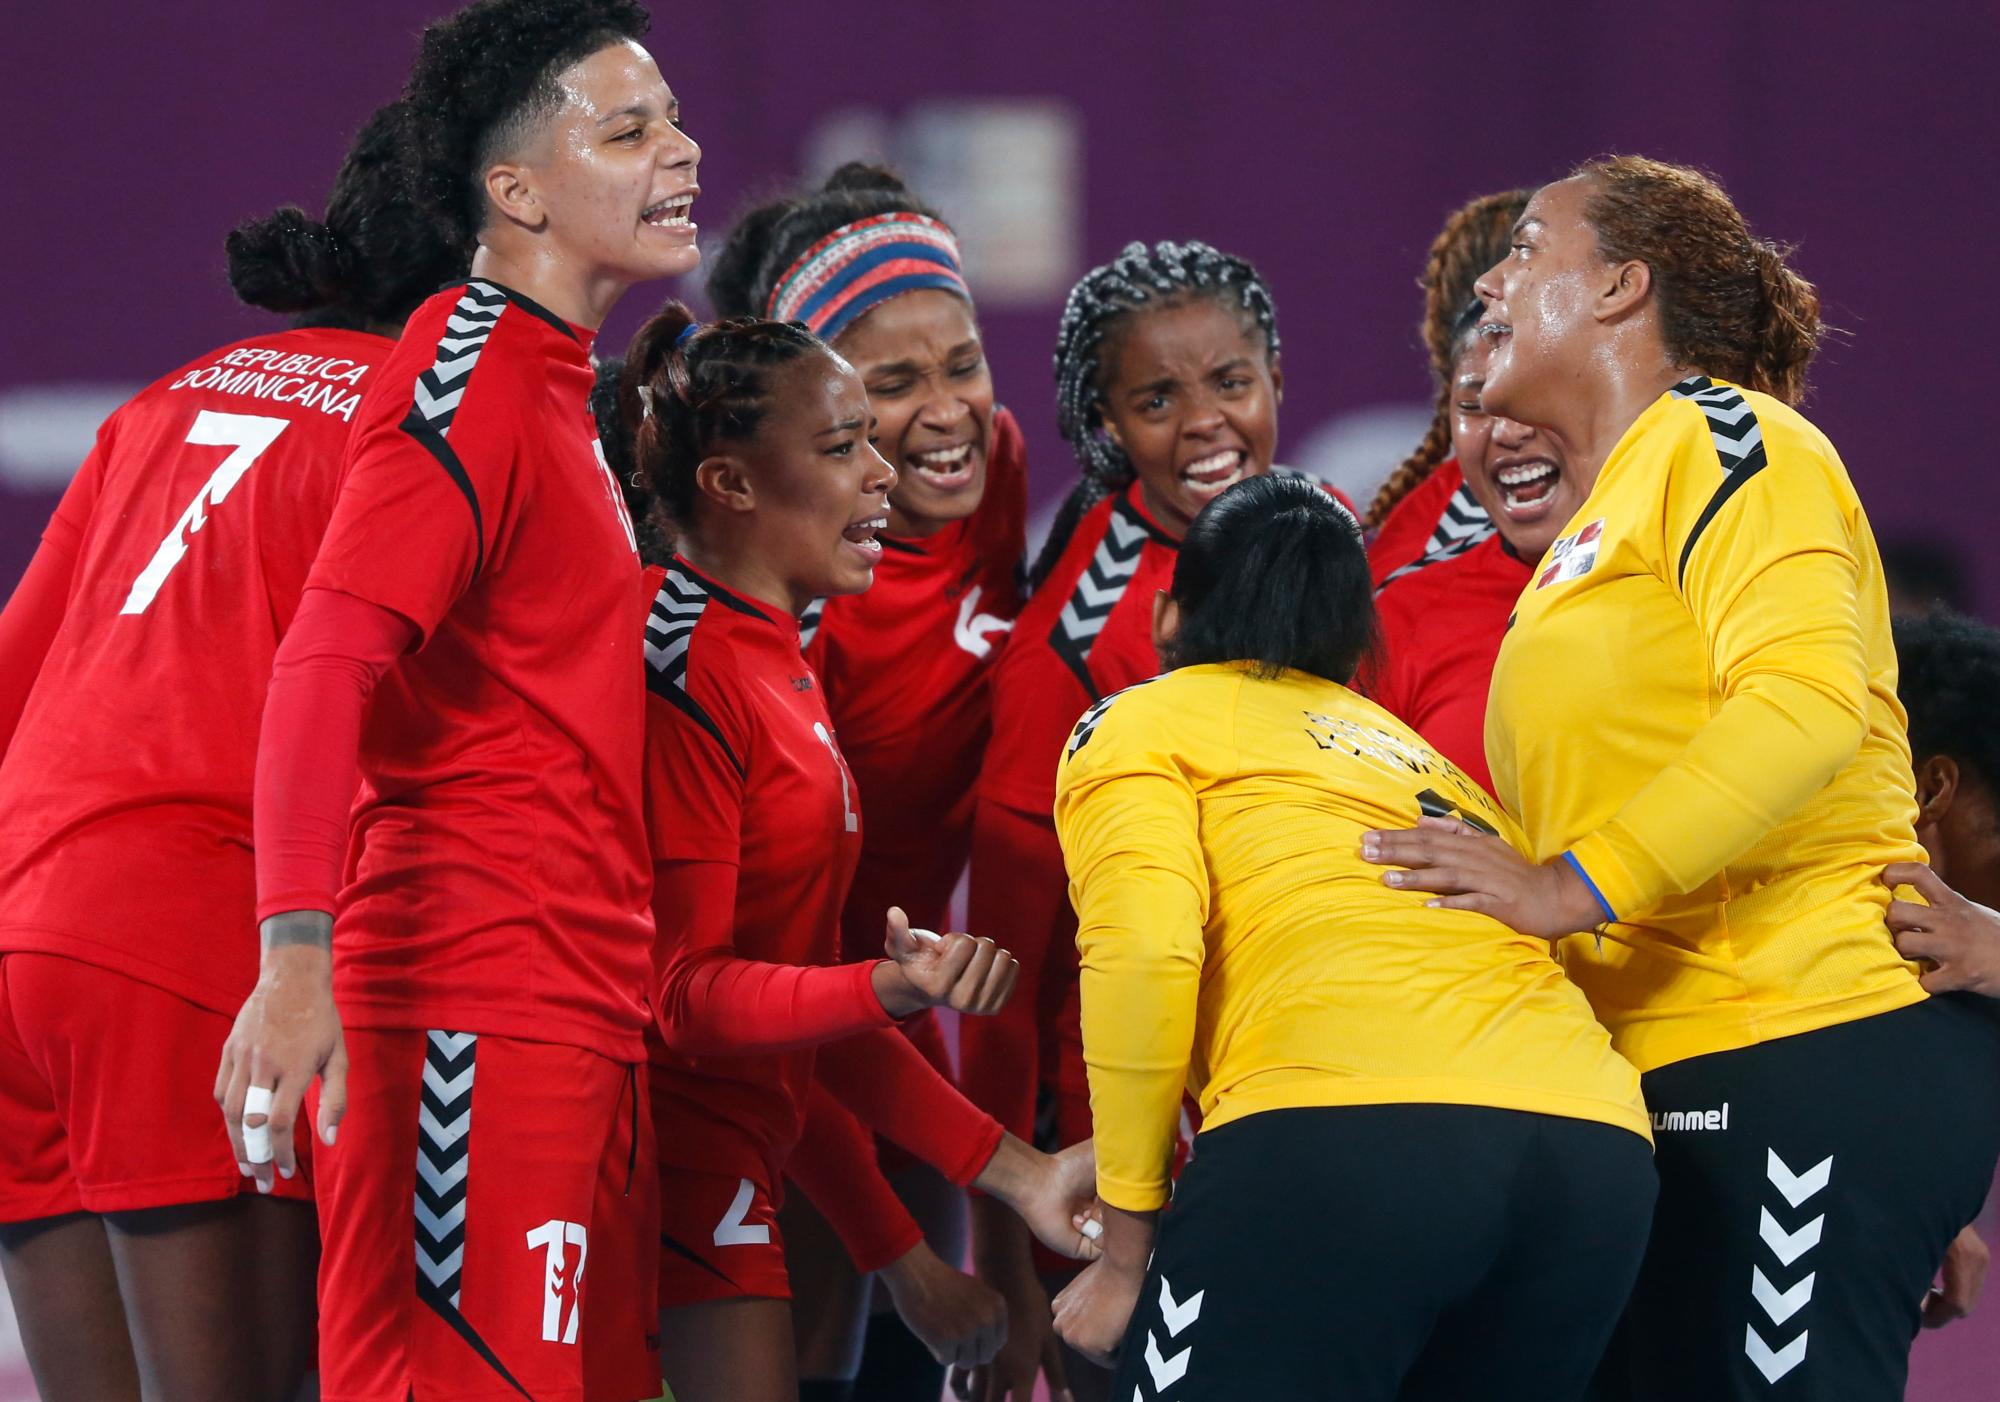 Equipo de balonmano de República Dominicana celebrando su victoria contra Perú en Villa Deportiva Nacional-Videna en los Juegos Panamericanos Lima 2019.